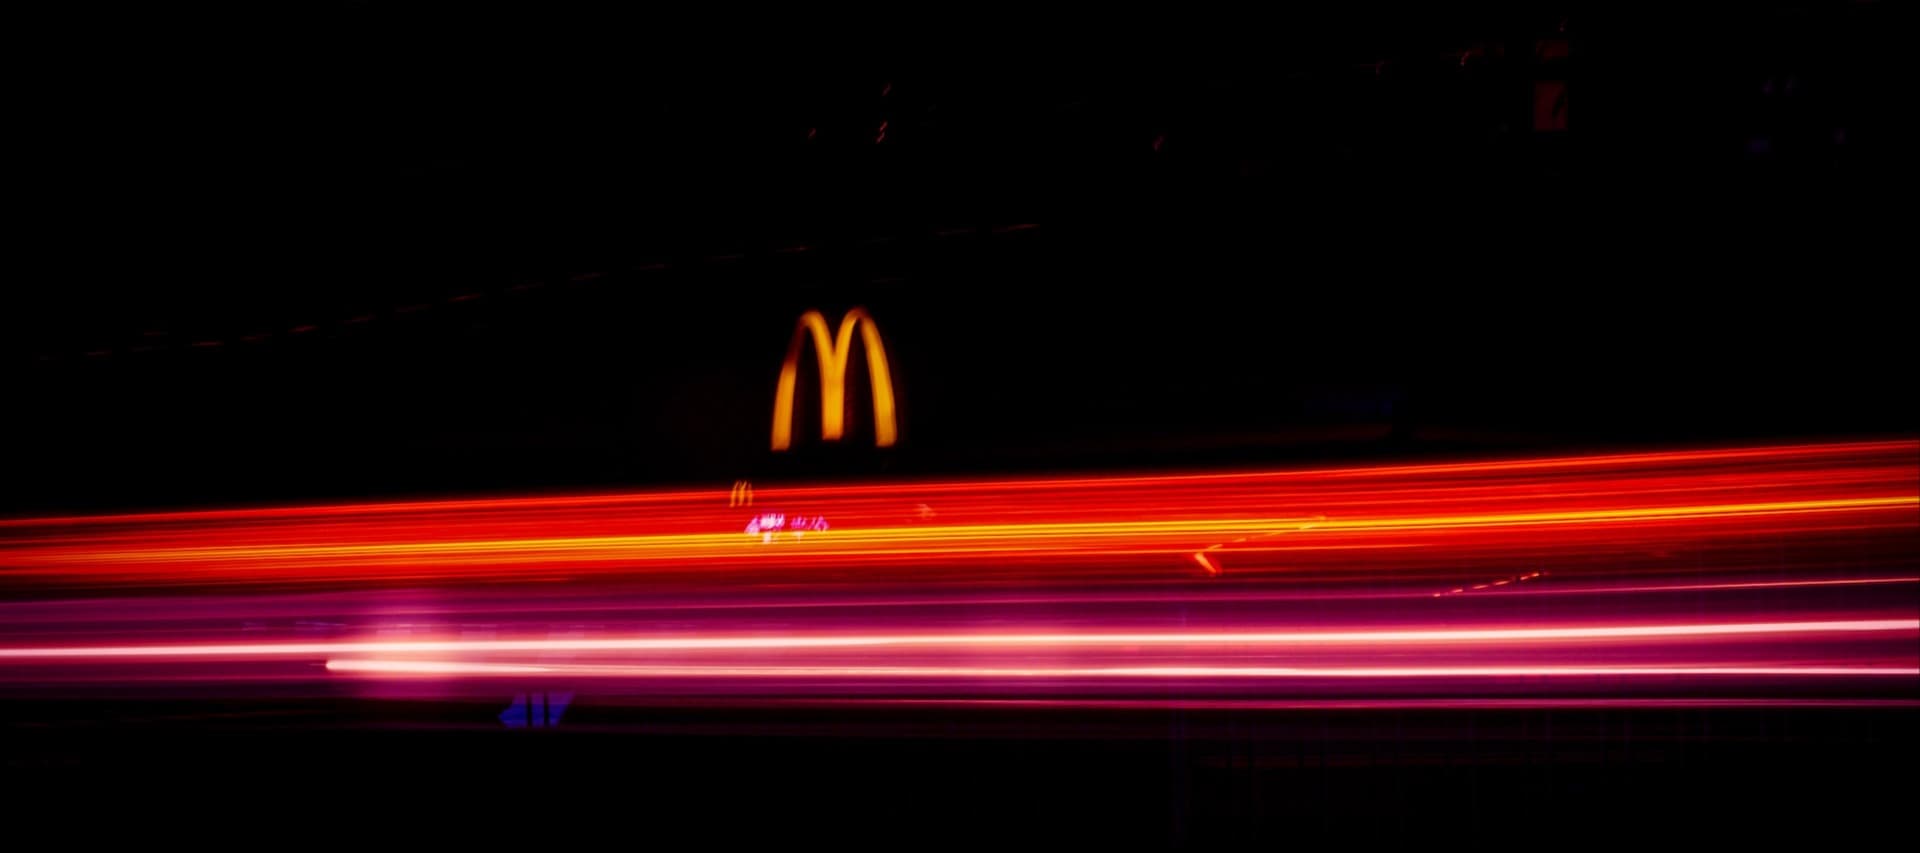 Фото новости: "McDonald’s создаст сеть ресторанов под вывеской CosMc's"